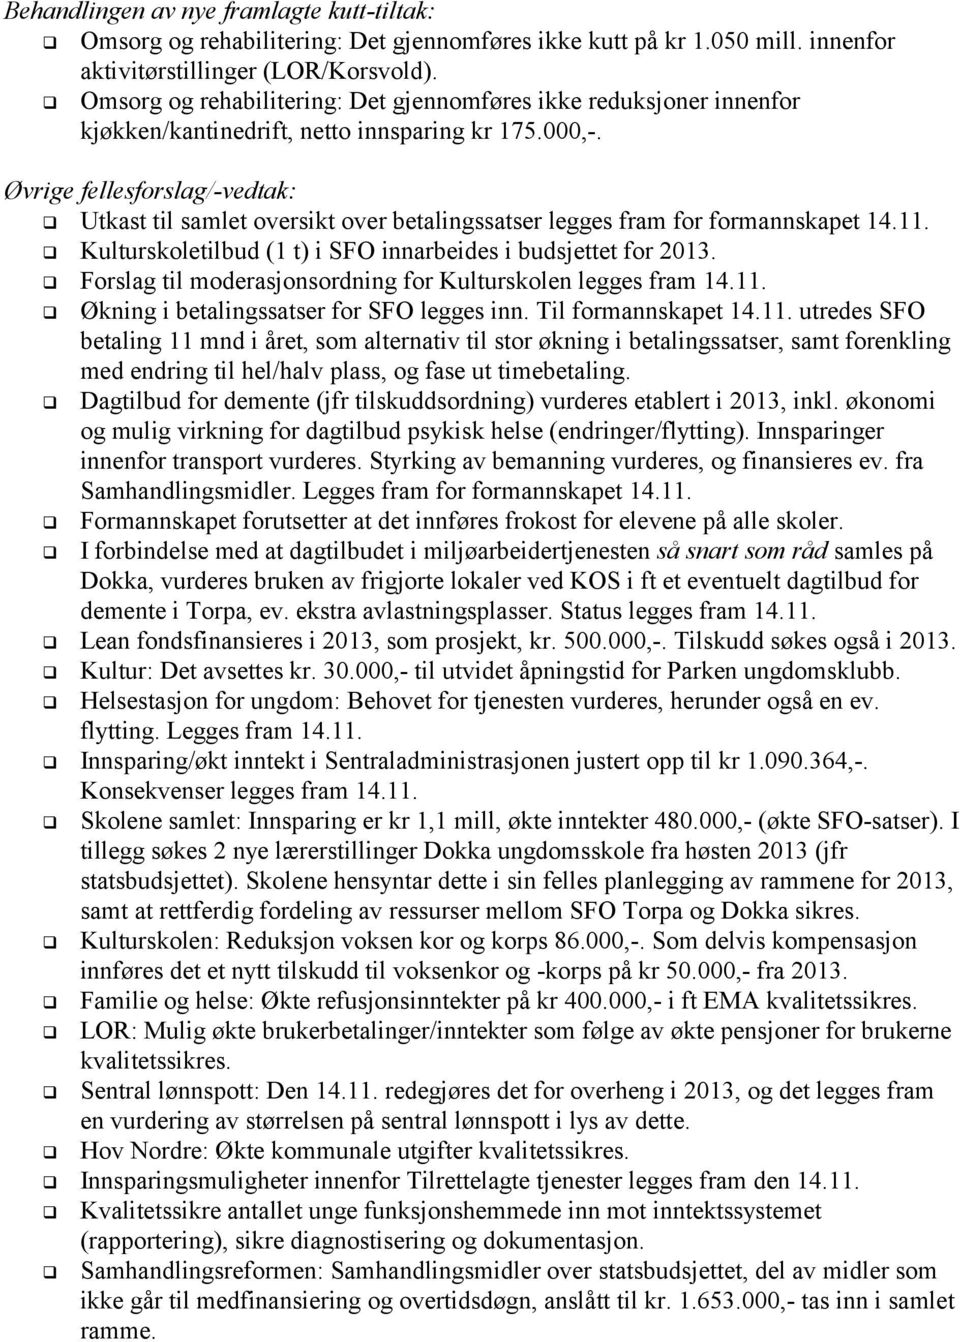 Øvrige fellesforslag/-vedtak: Utkast til samlet oversikt over betalingssatser legges fram for formannskapet 14.11. Kulturskoletilbud (1 t) i SFO innarbeides i budsjettet for 2013.